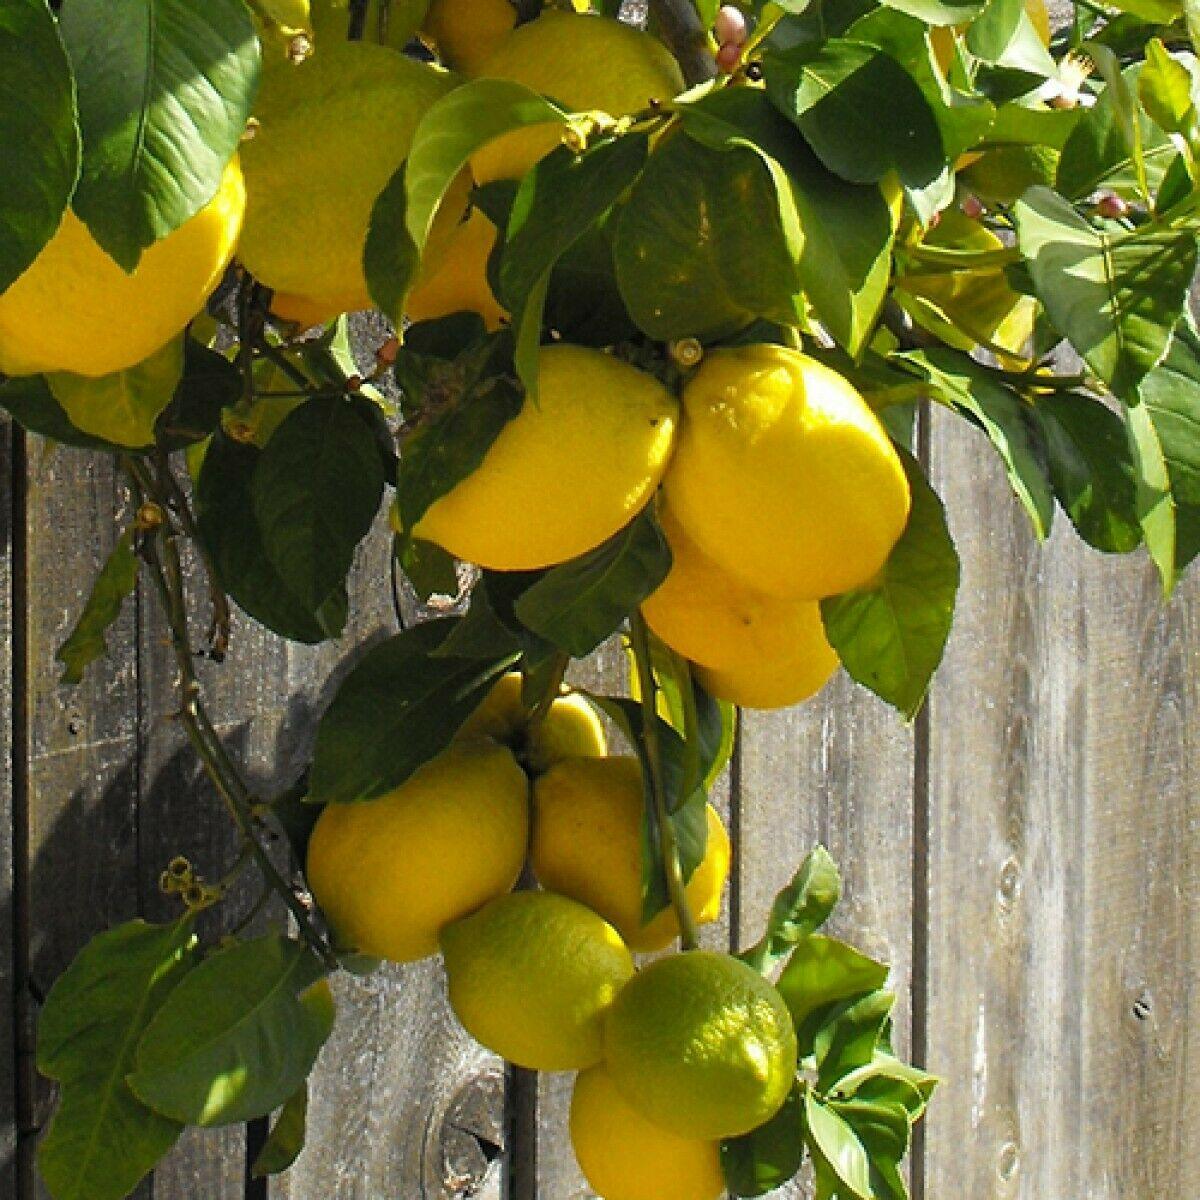 Eureka Lemon Tree - 12-15" Live Plant, Ships in 5" Pots - Citrus limon 'Eureka' - The Nursery Center